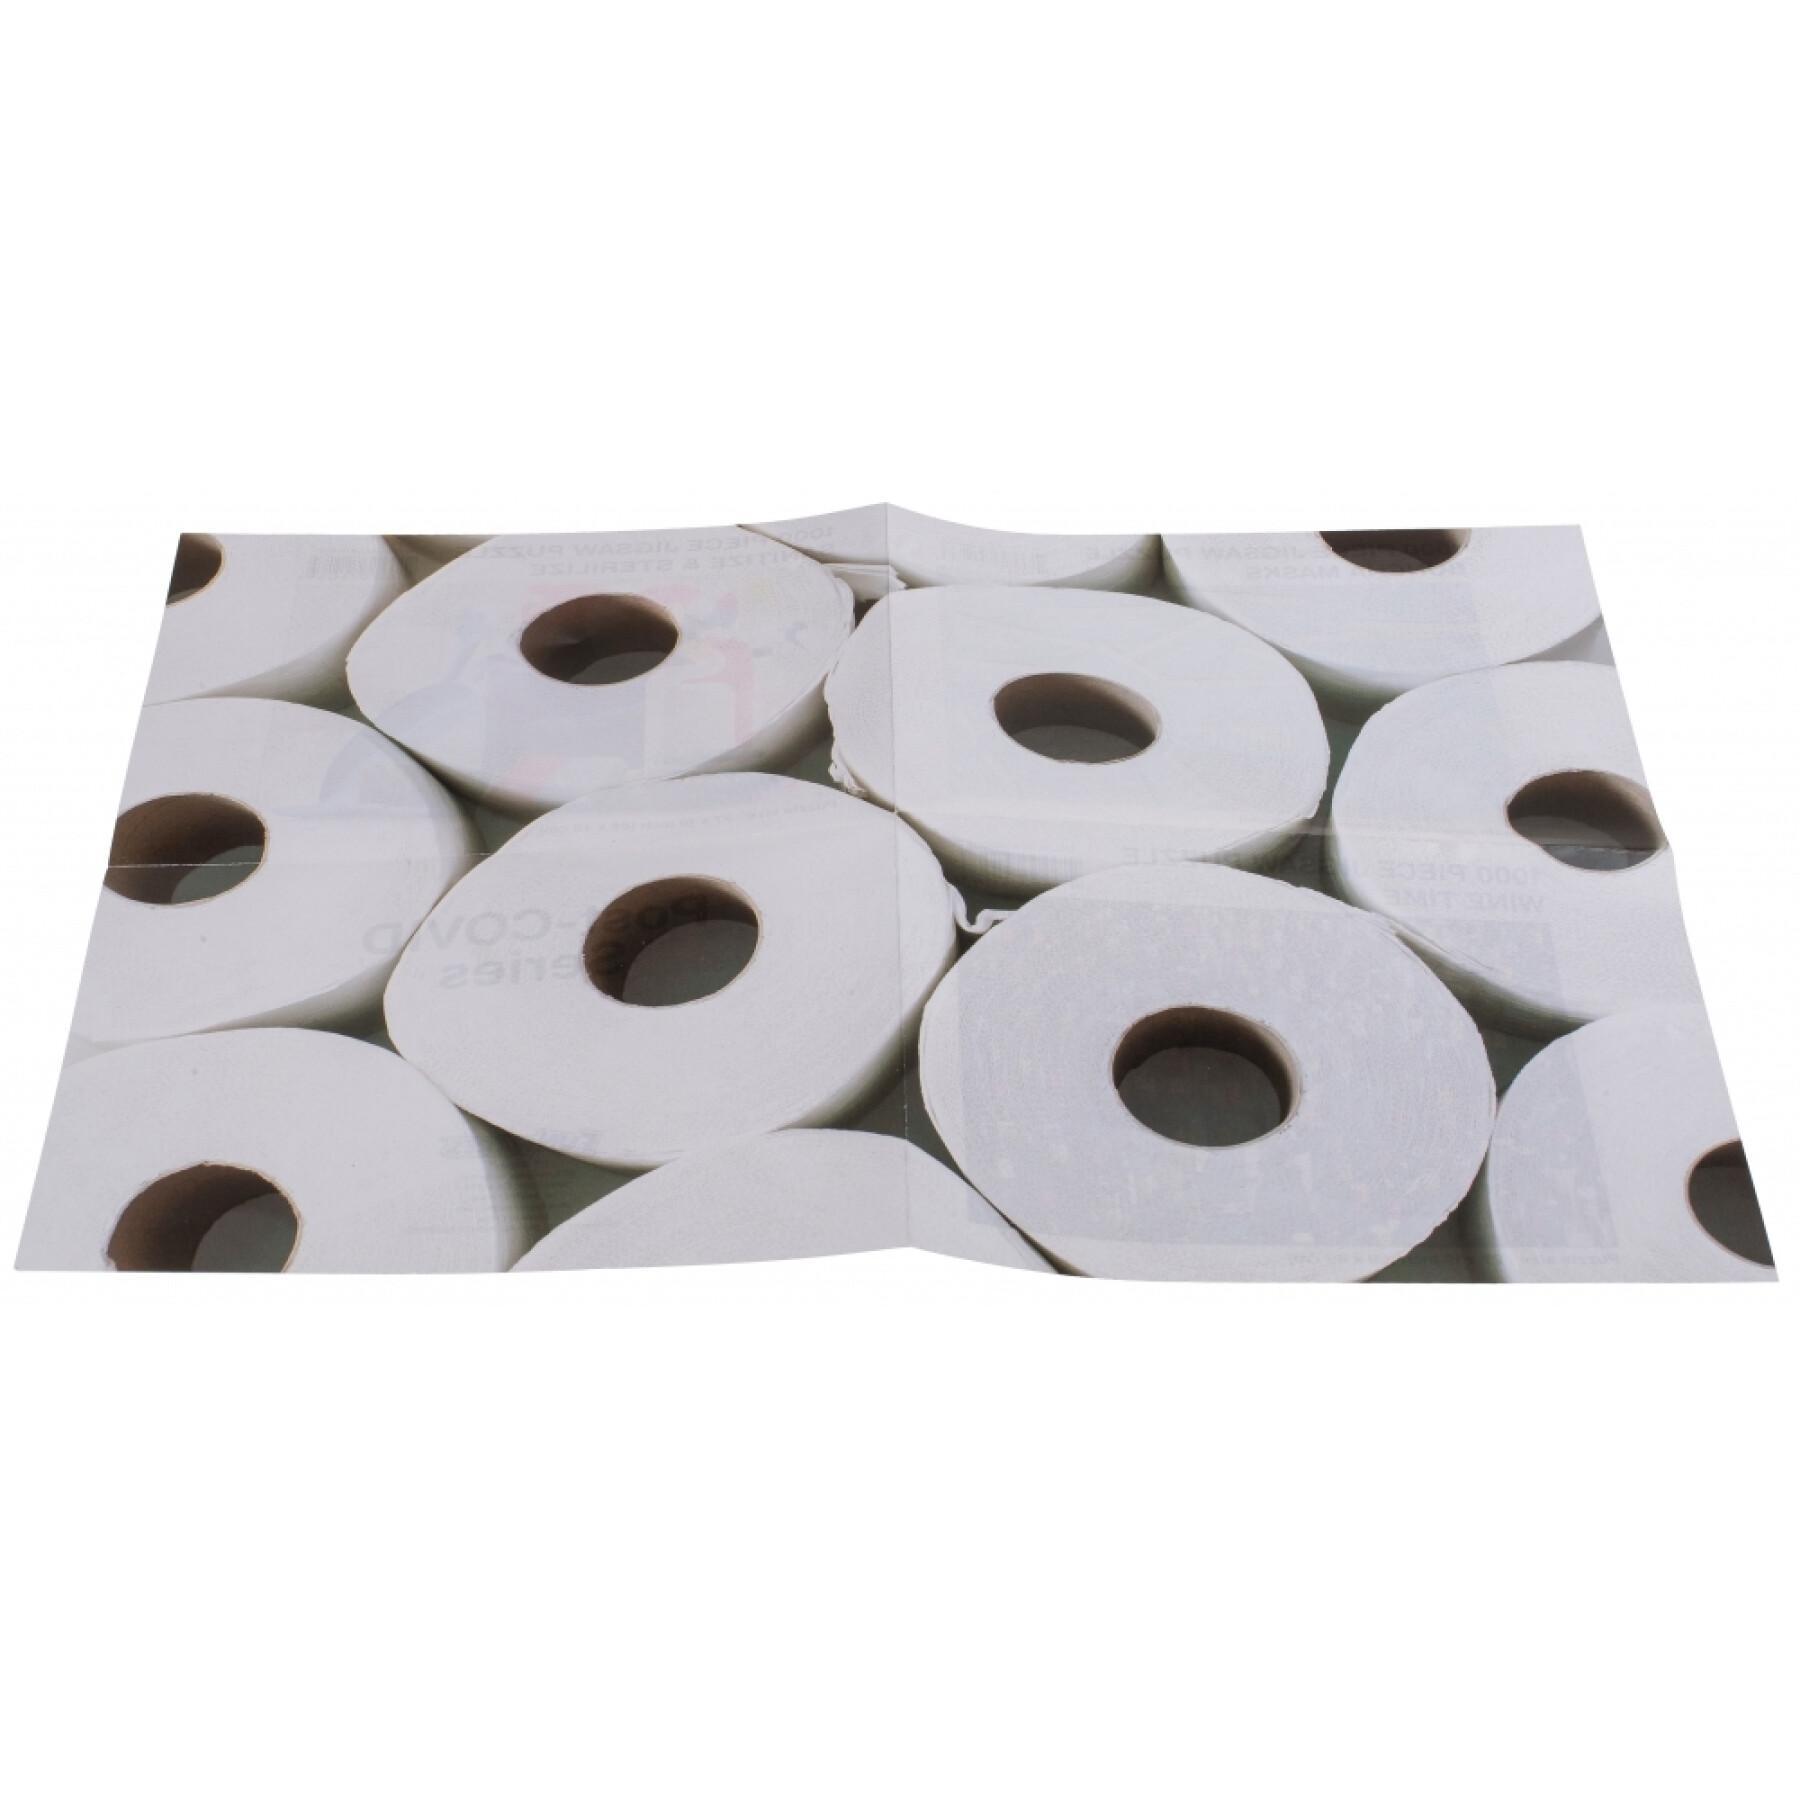 Puzzle da 1000 pezzi con rotoli di carta igienica OOTB